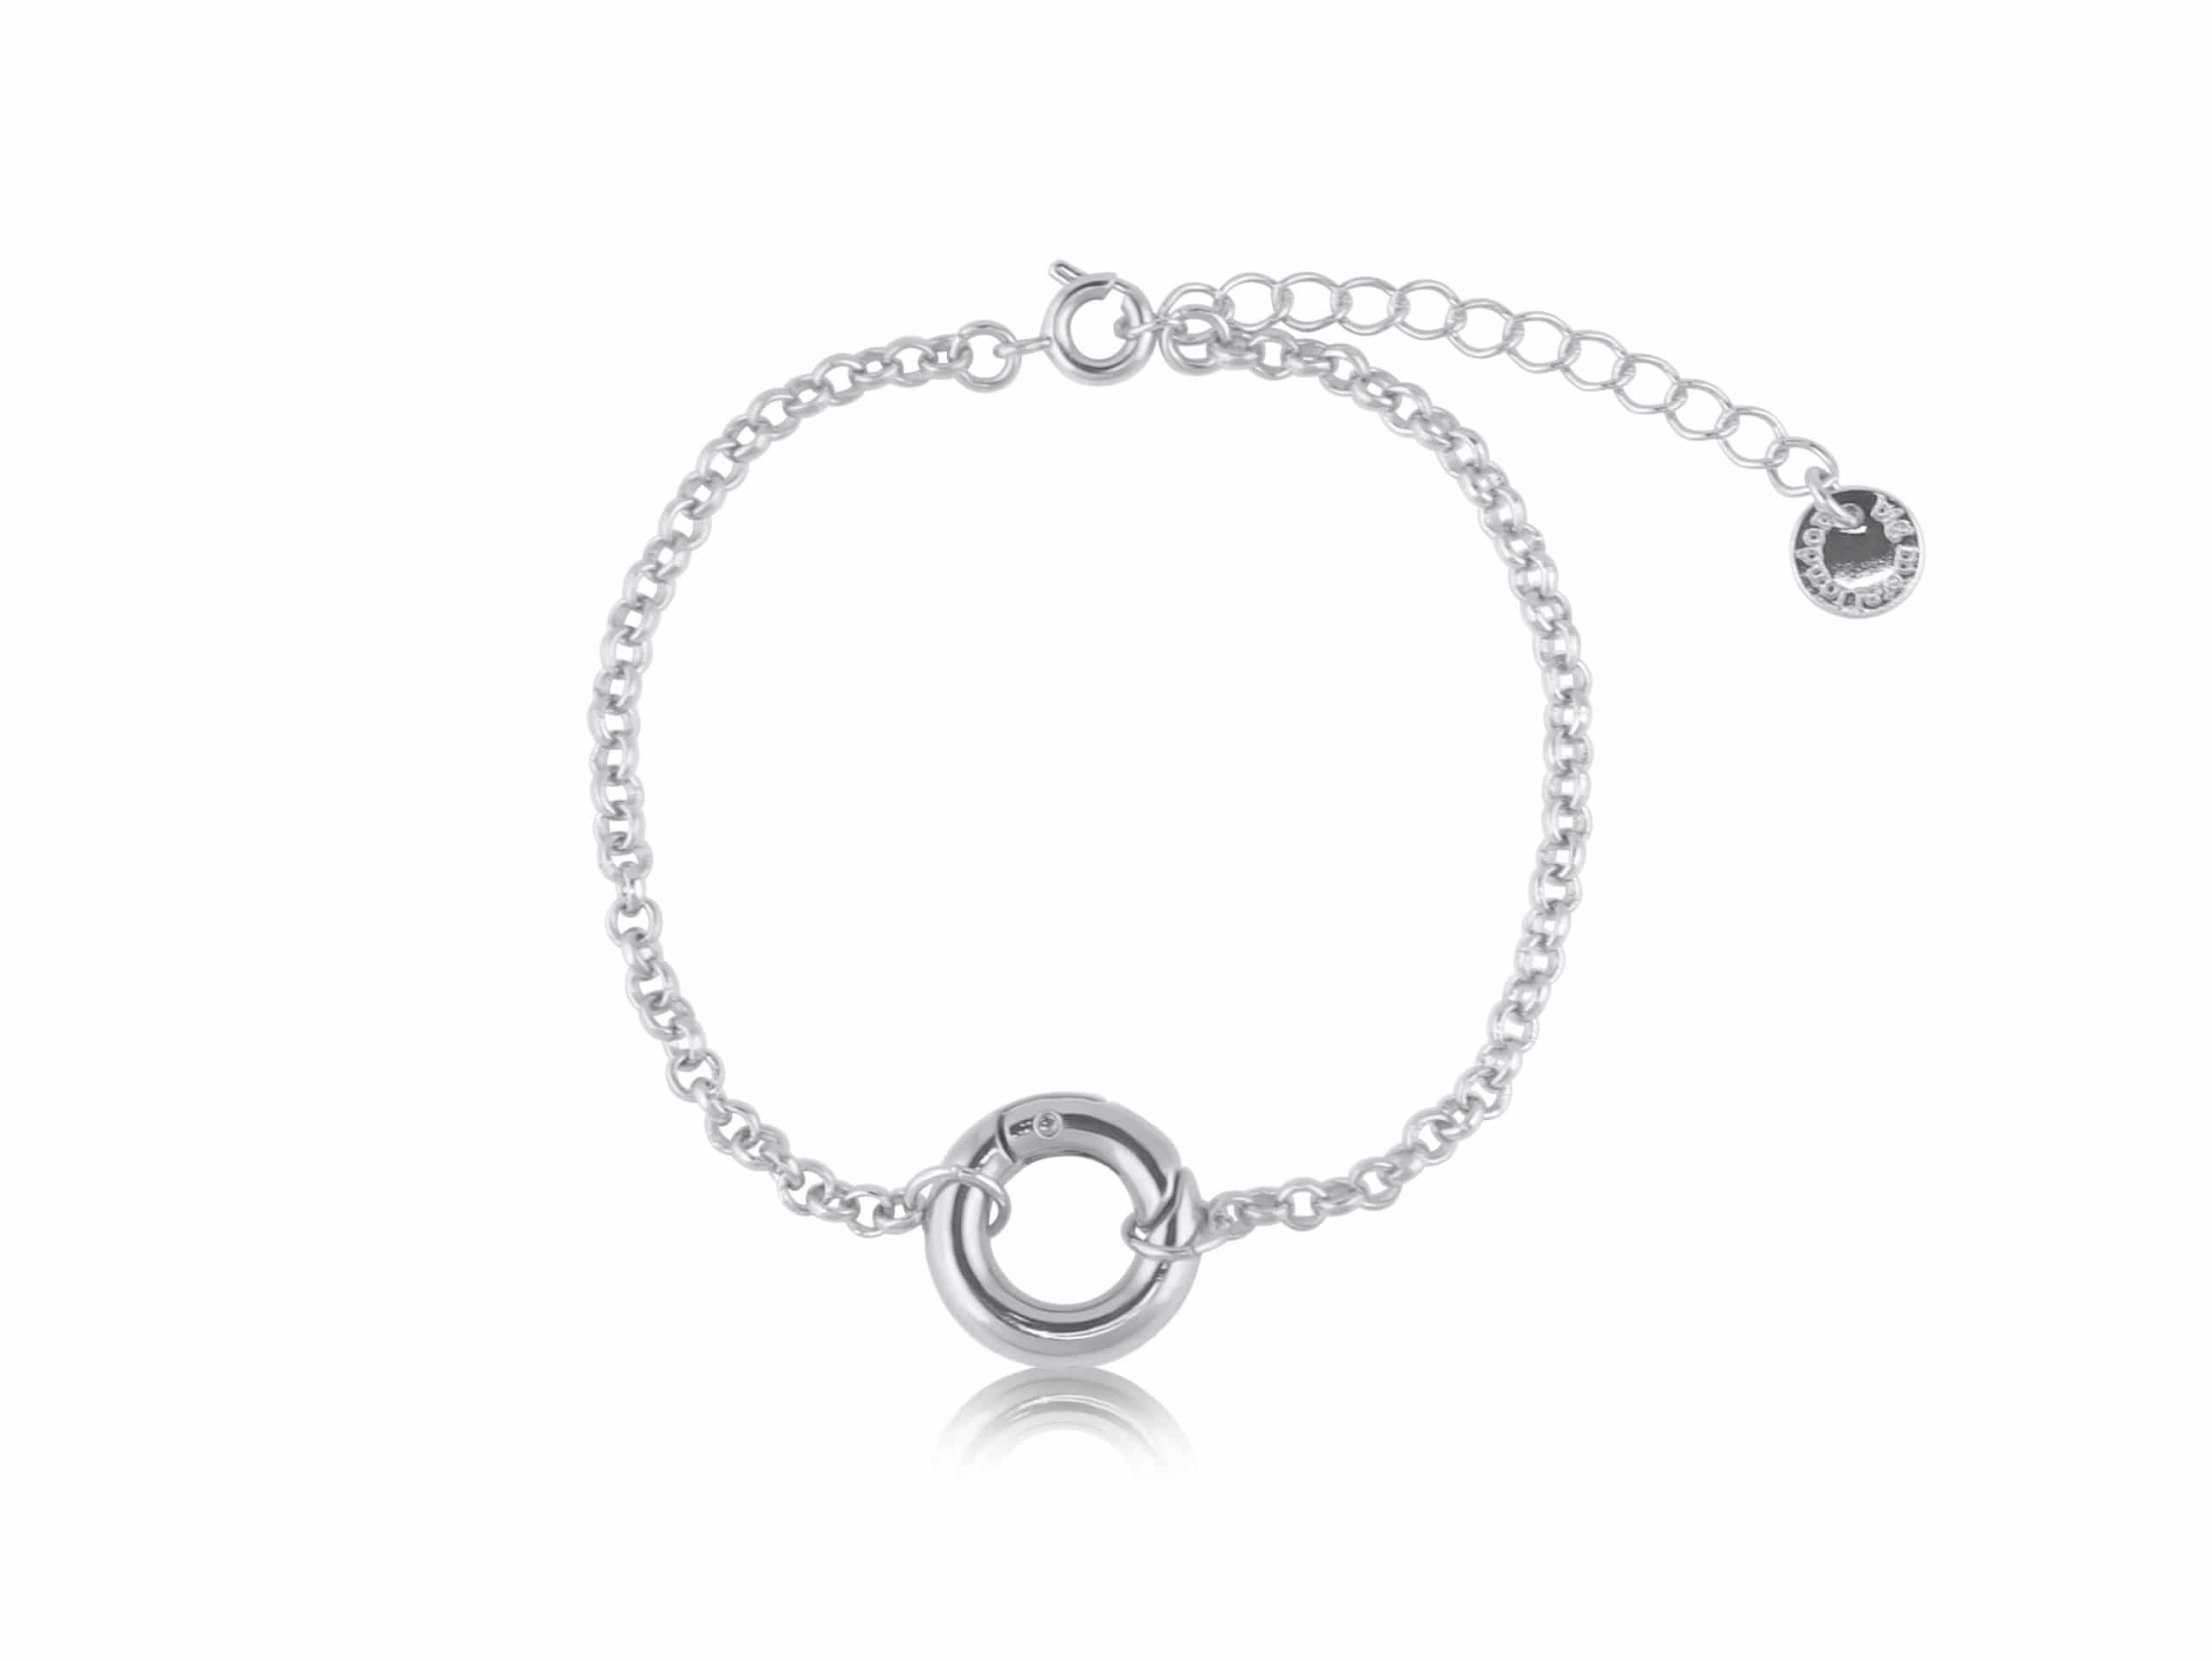 Olivia Mini Brass Belcher Chain Bracelet with a Lock in Silver – Big Metal London